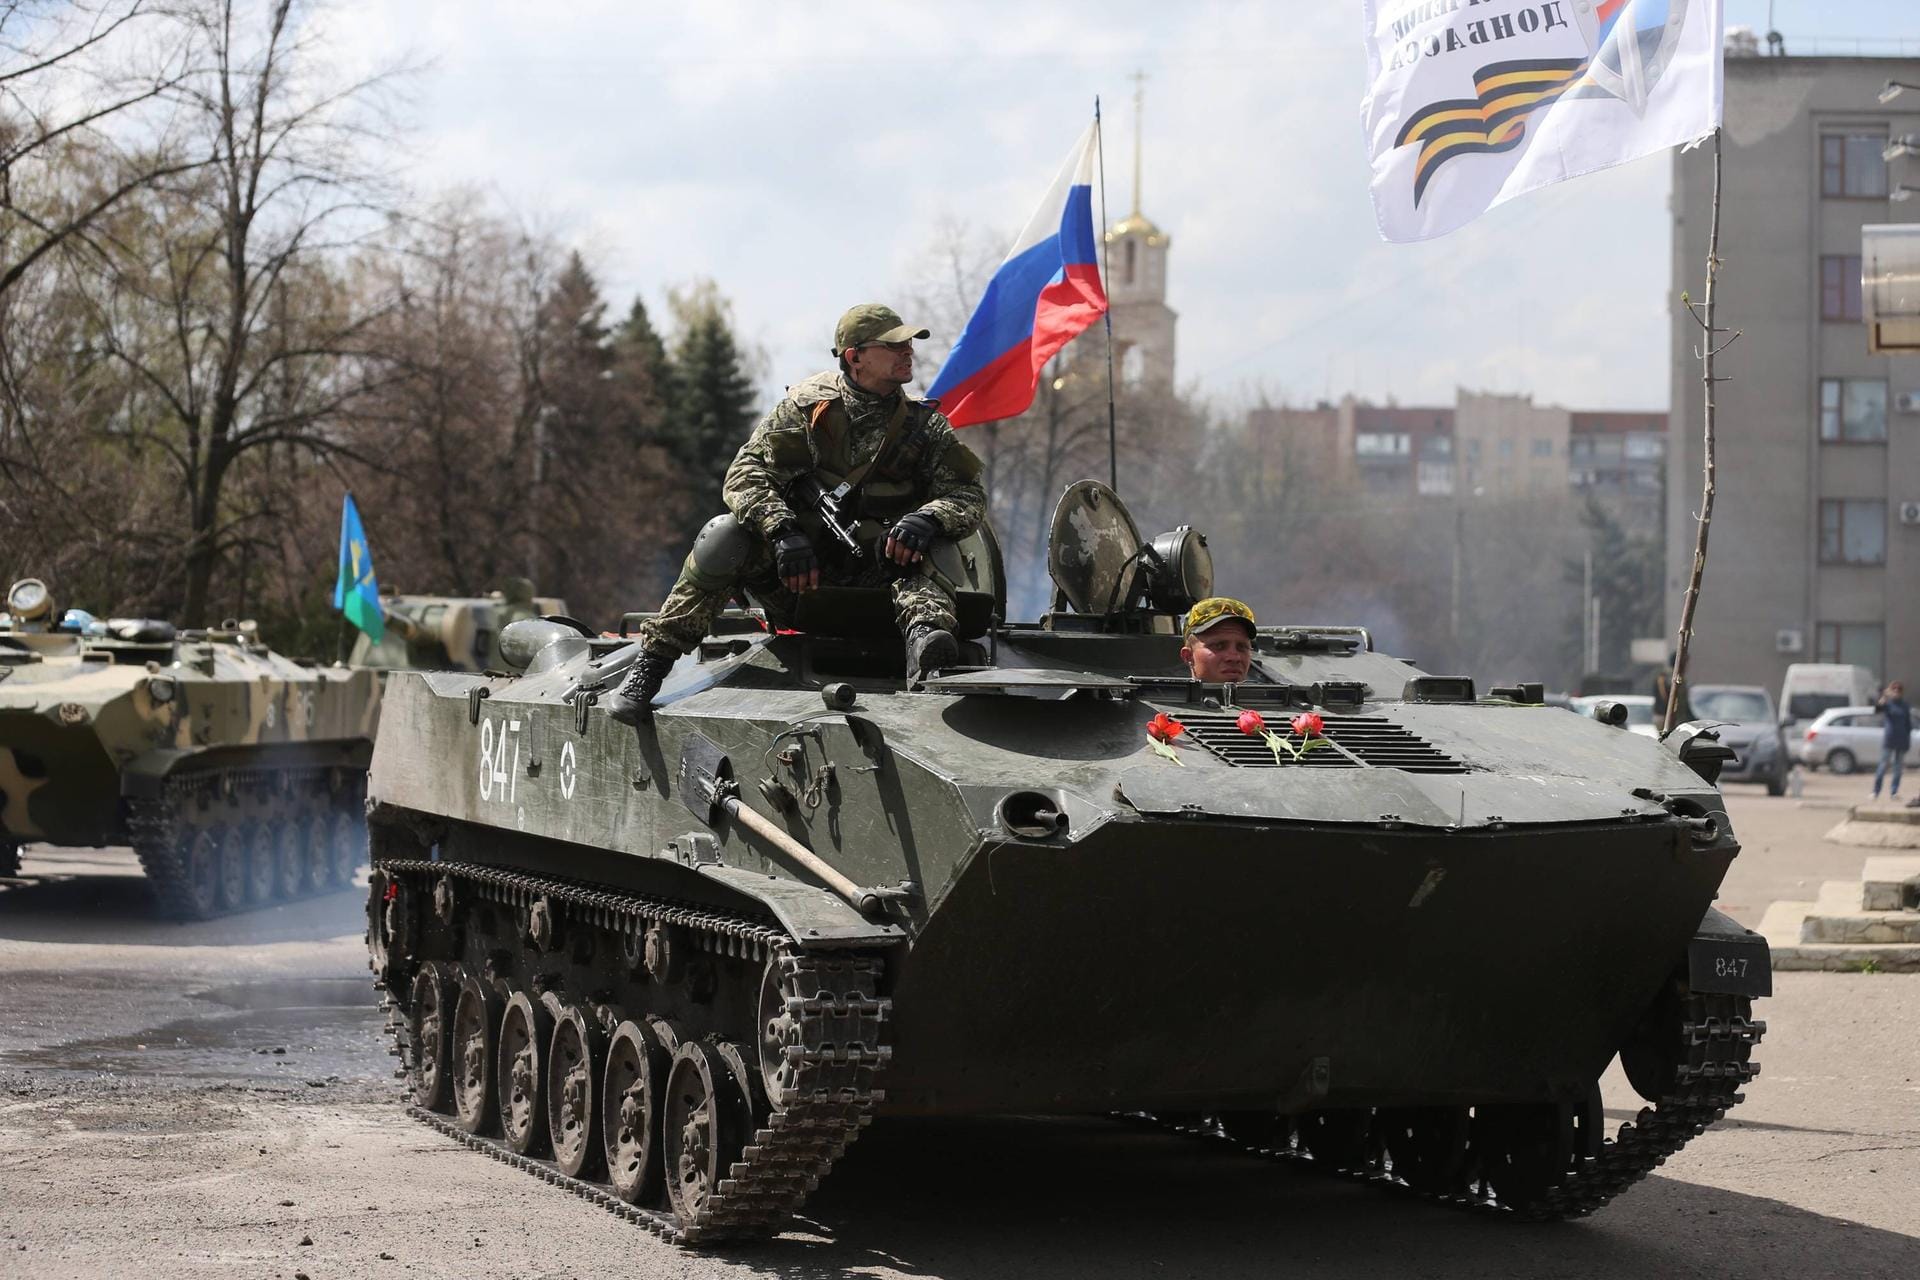 April 2014: In der ostukrainischen Region Donbass rufen die von Moskau unterstützten Separatisten die «Volksrepublik Donezk» aus, Luhansk folgt. Das westliche Verteidigungsbündnis Nato setzt seine militärische Zusammenarbeit mit Russland wegen der Krim-Krise aus.